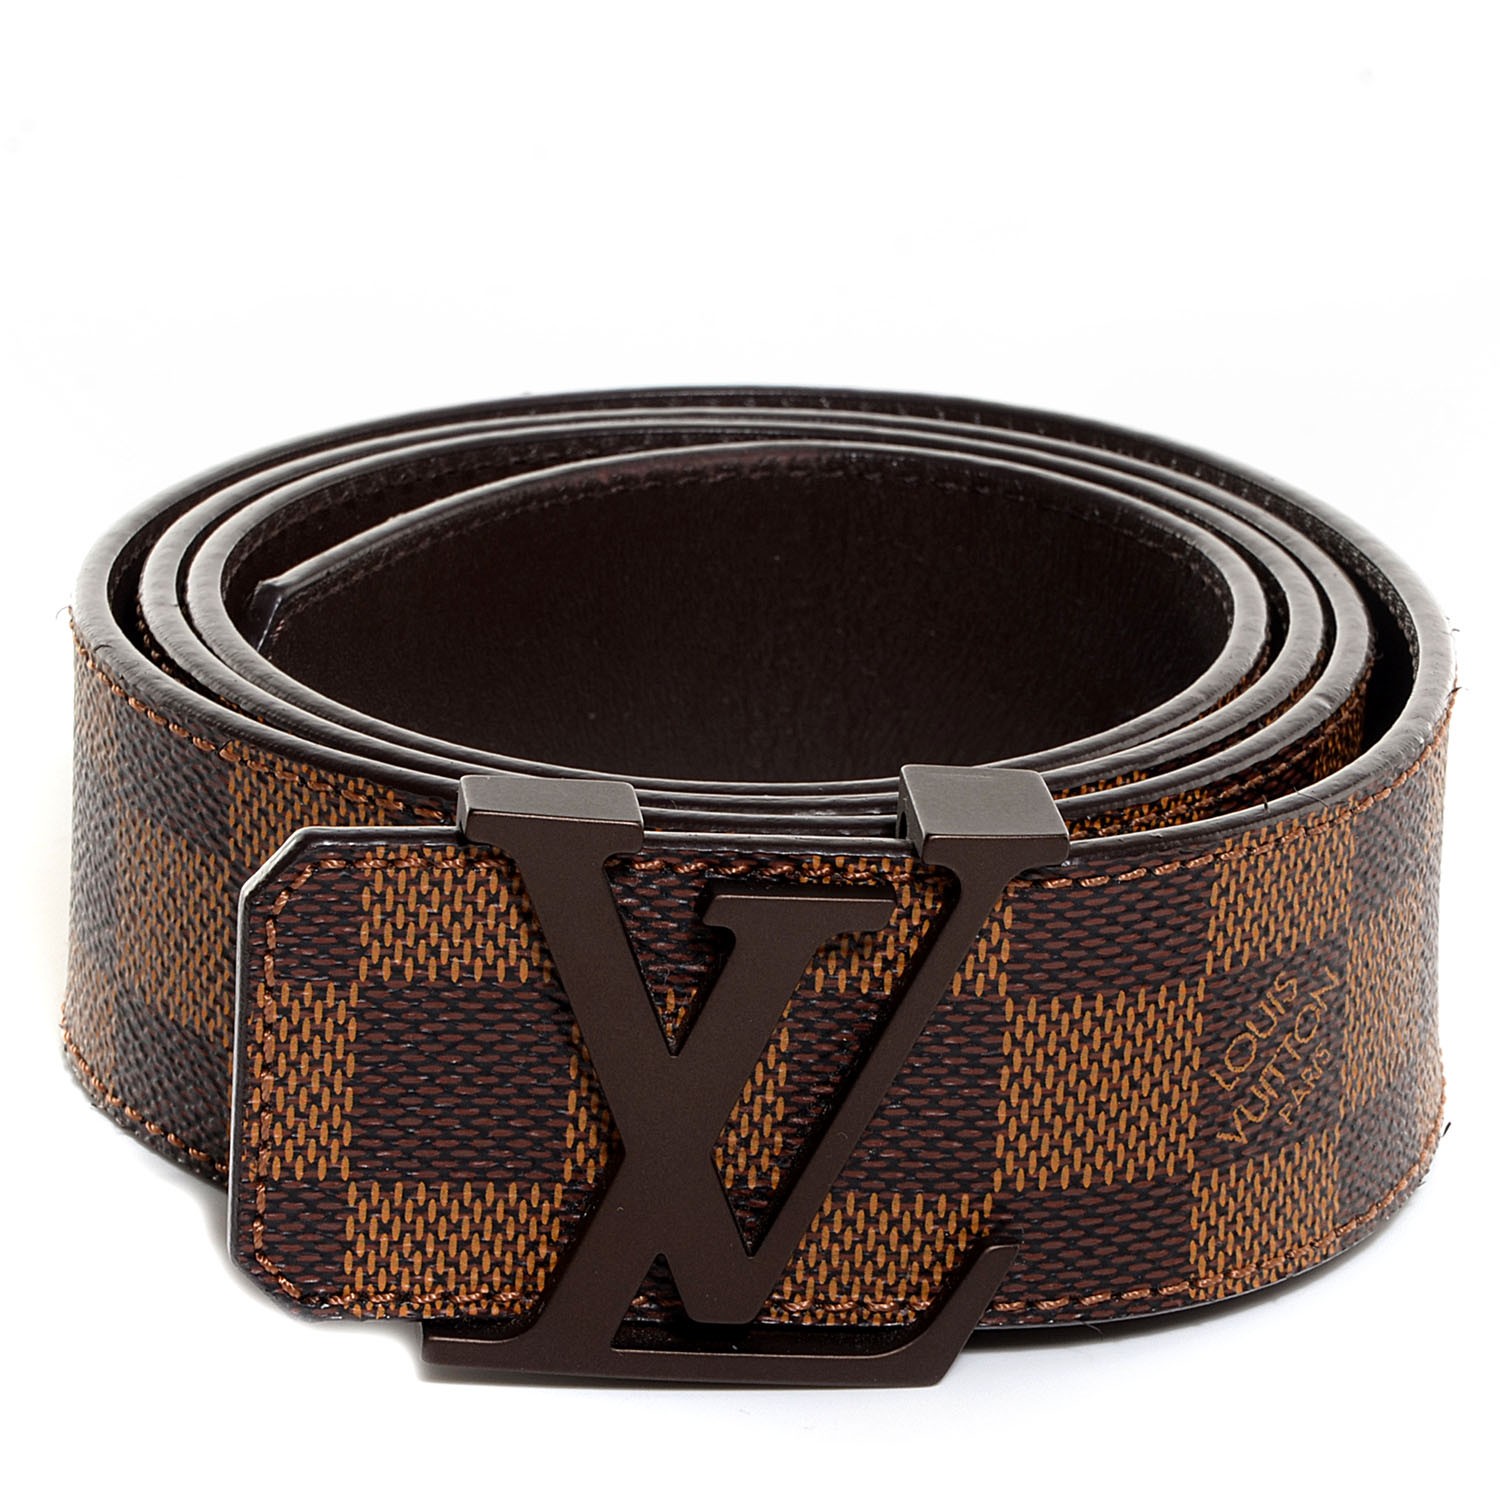 Louis Vuitton Ceinture Carre Leather Belt Damier - Brown